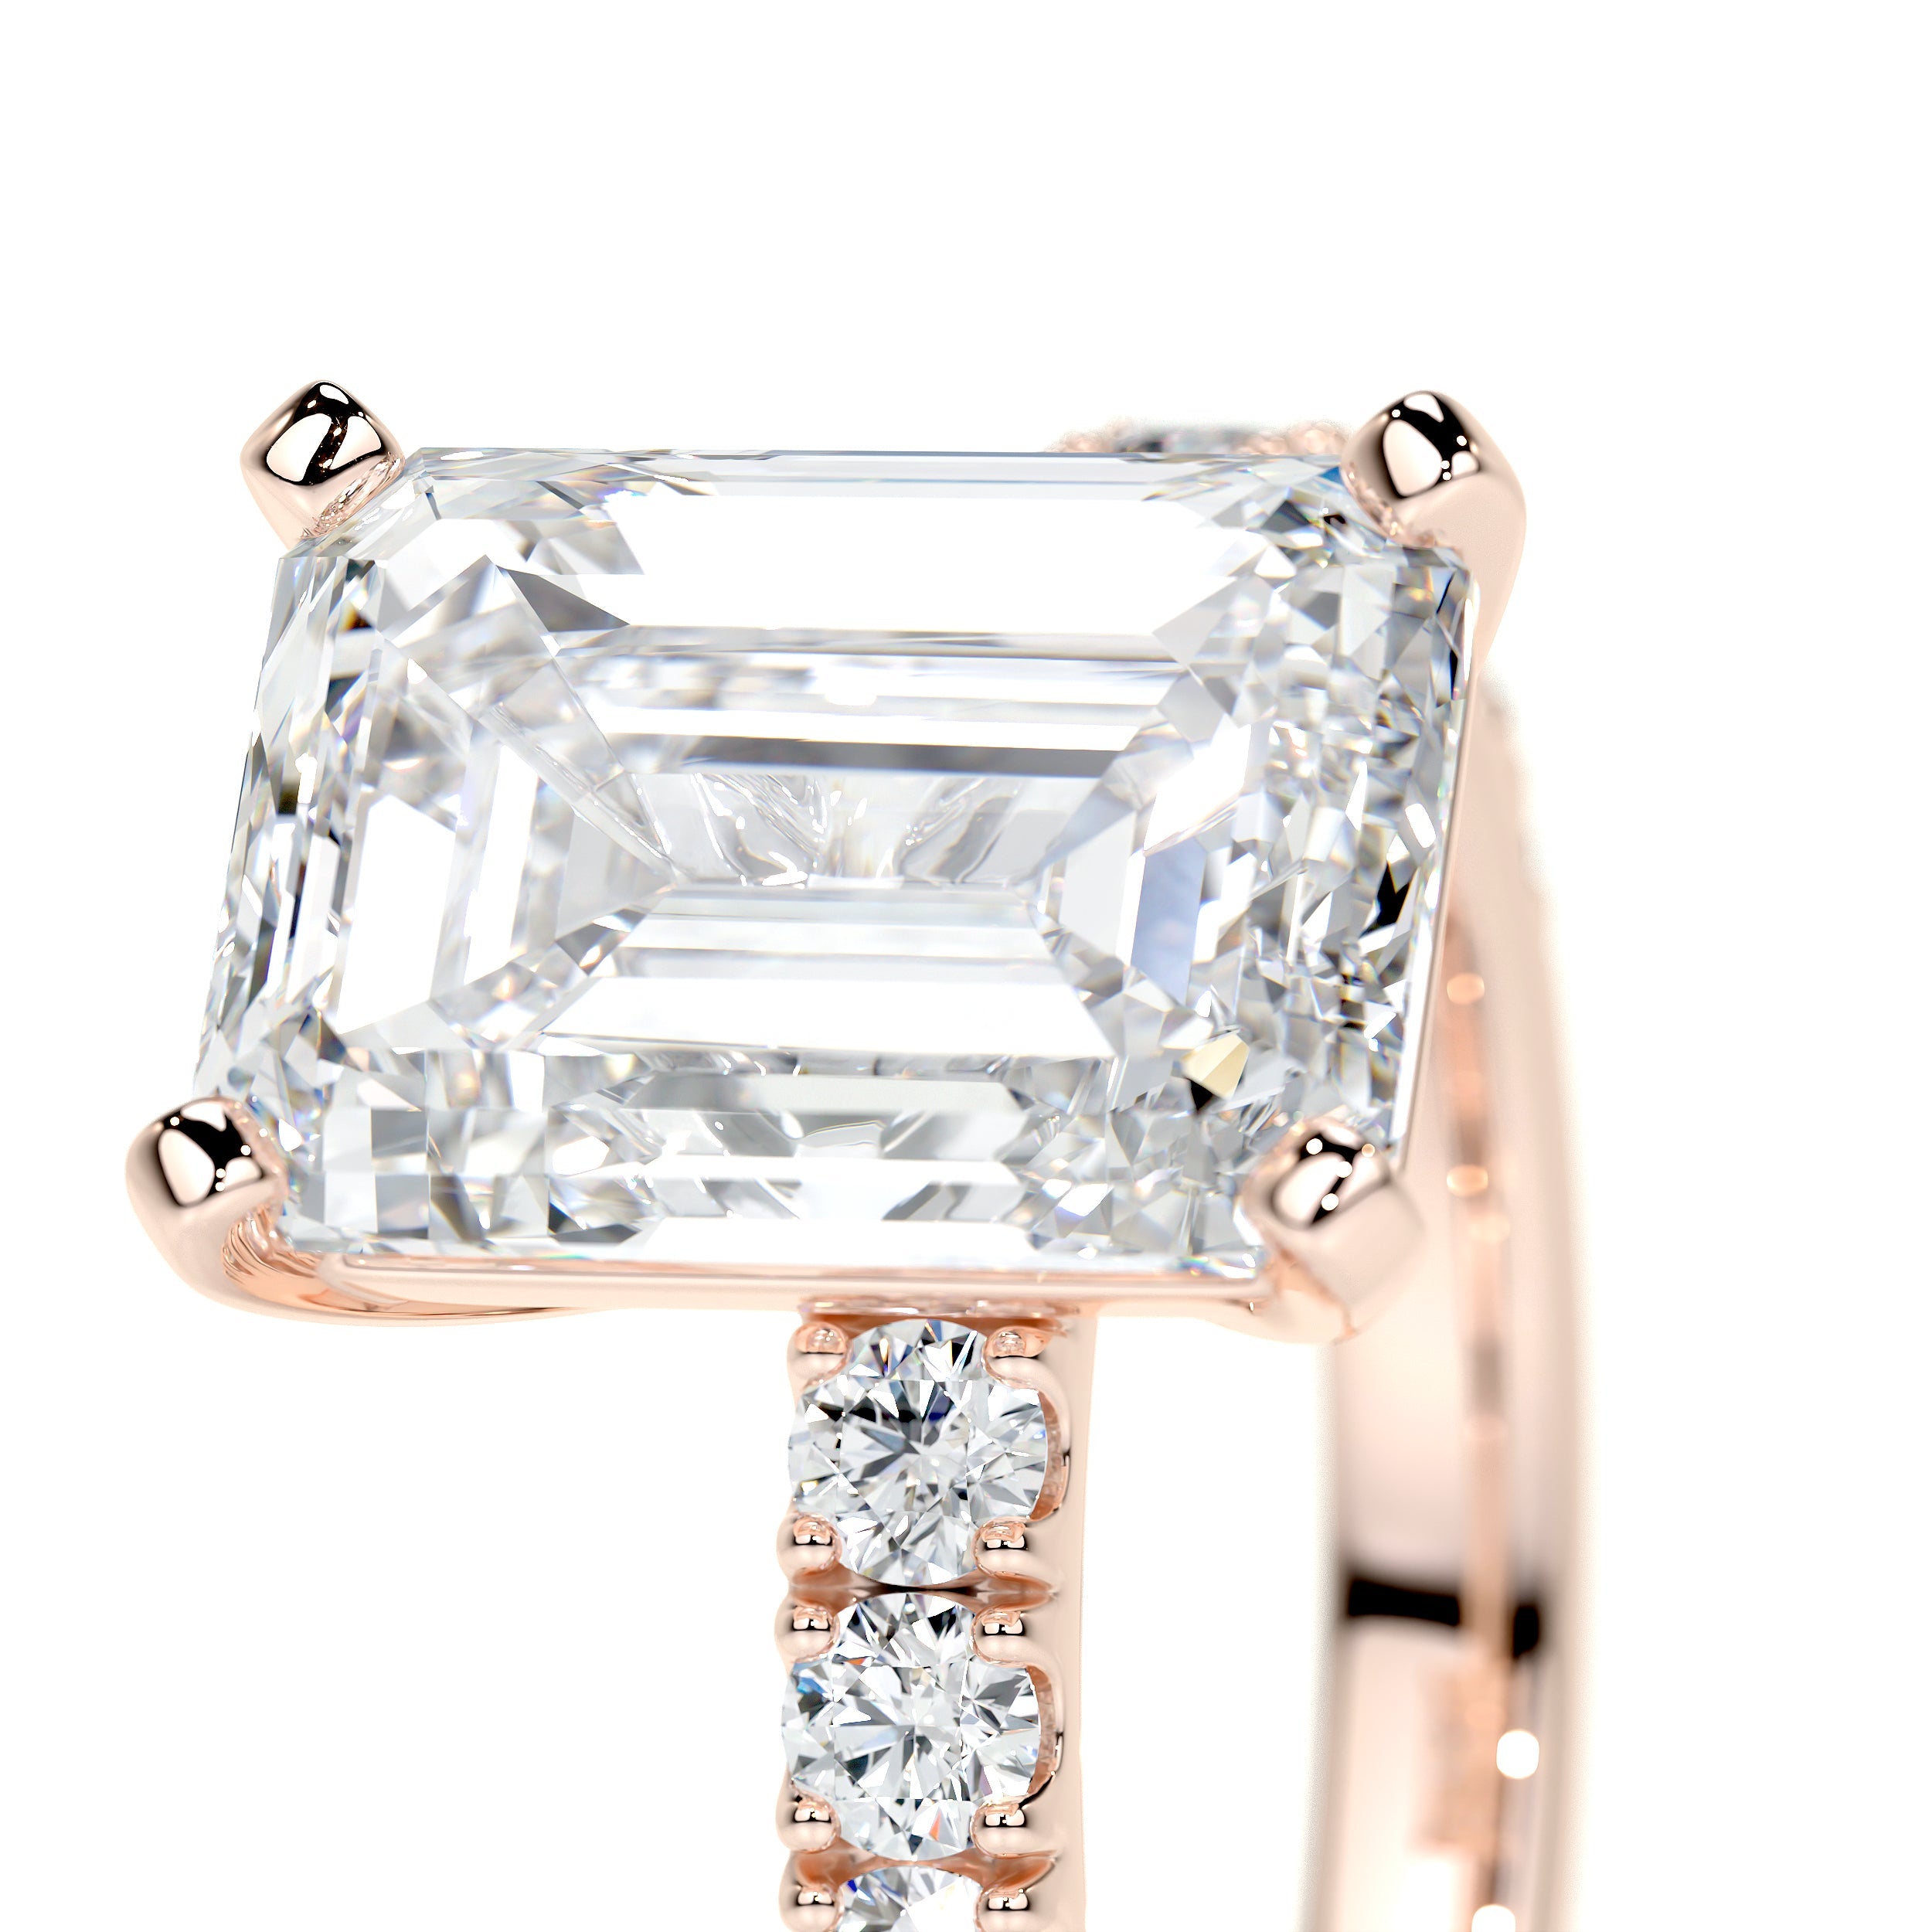 Royal Lab Grown Diamond Ring   (3.5 Carat) -14K Rose Gold